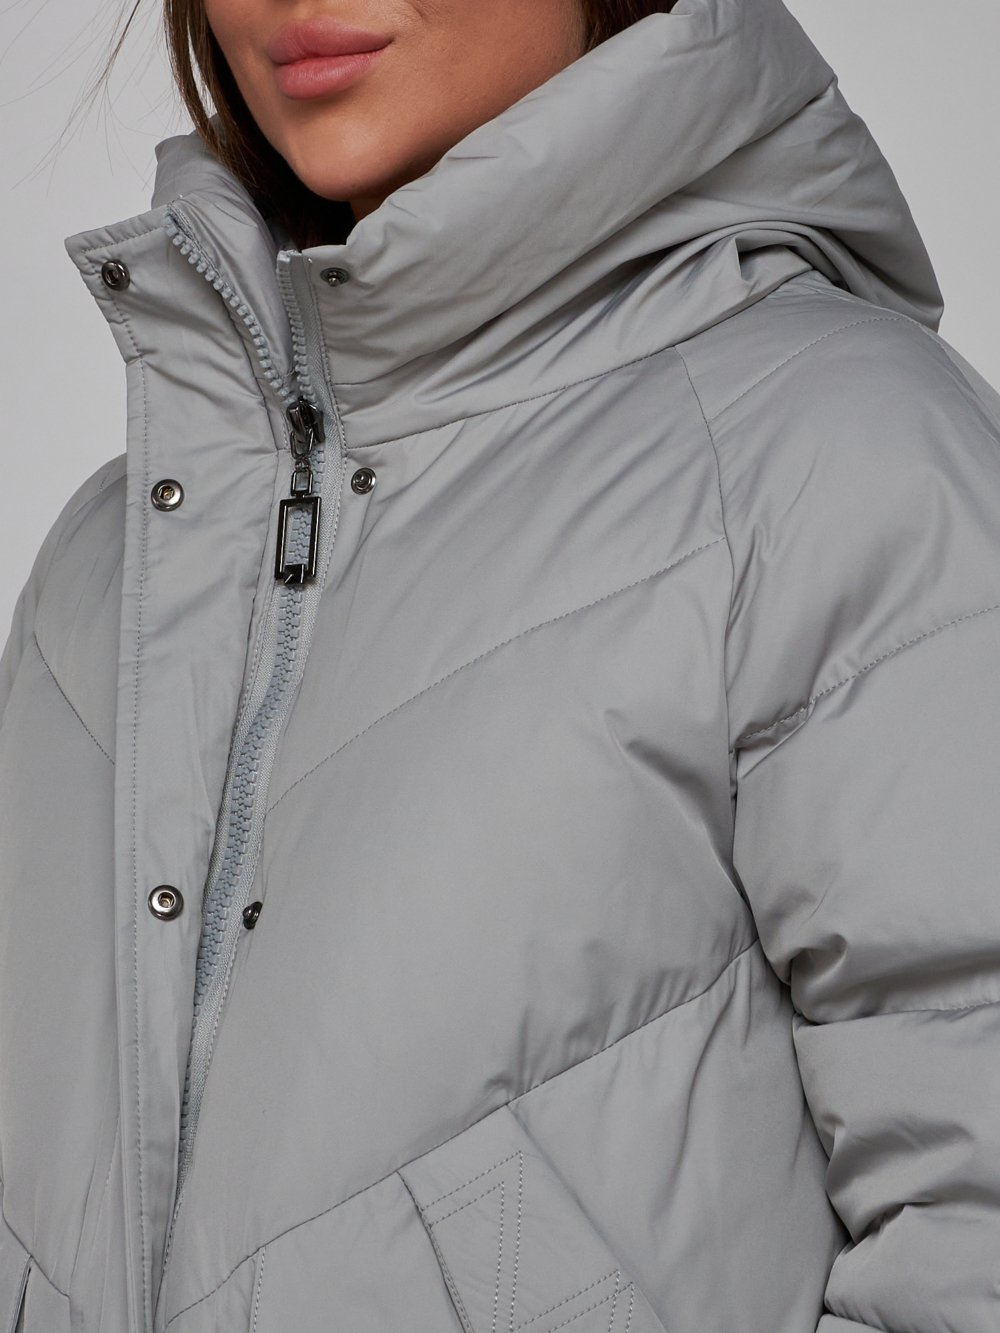 Купить куртку женскую оптом от производителя недорого в Москве 52362SS 1